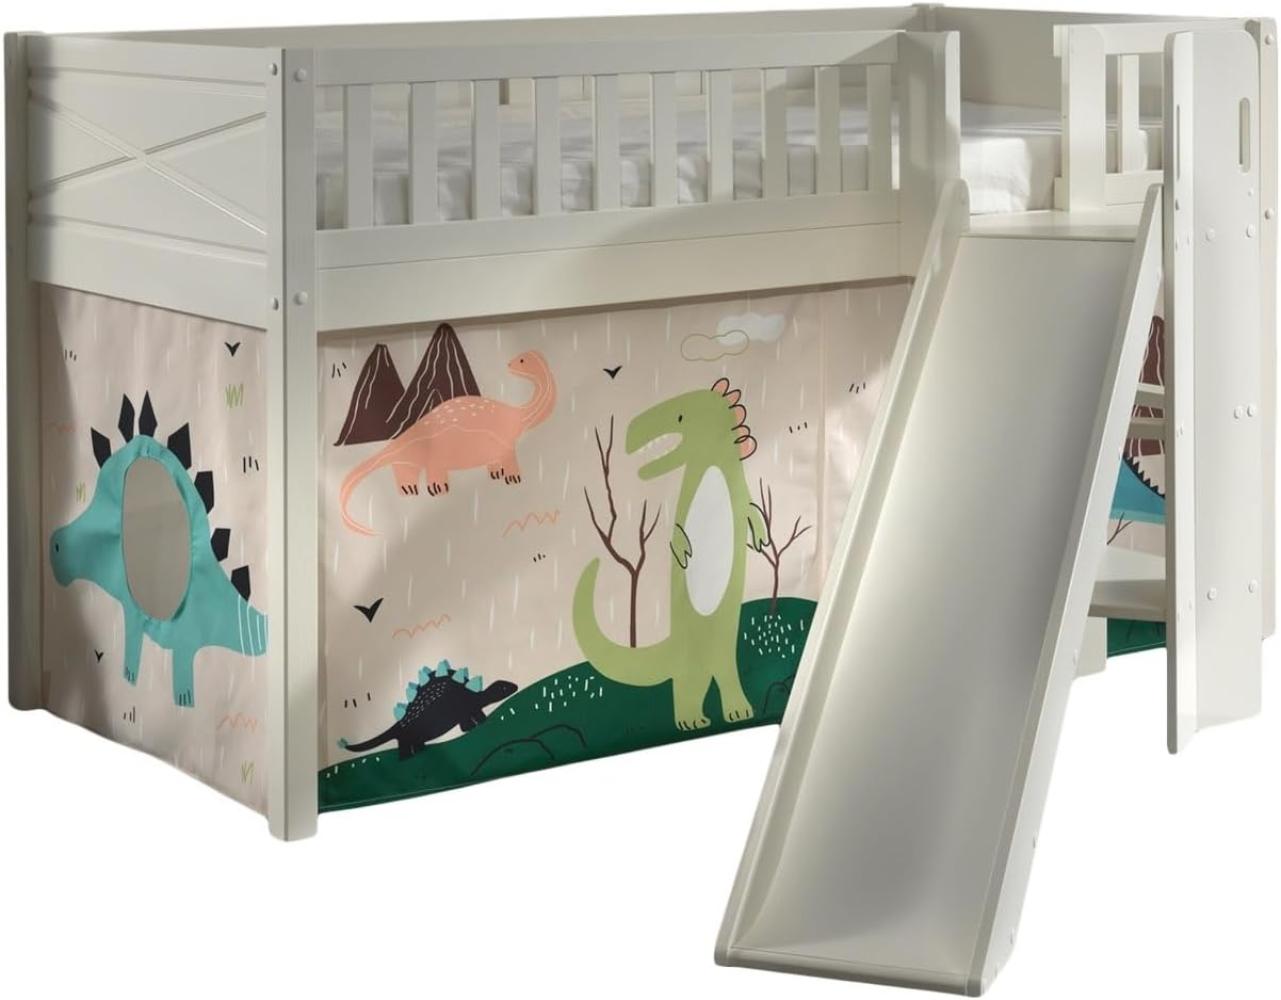 'Scott' Spielbett mit Rolllattenrost, Rutsche, Leiter und Textilset 'Dino', weiß lackiert, 90 x 200 cm Bild 1